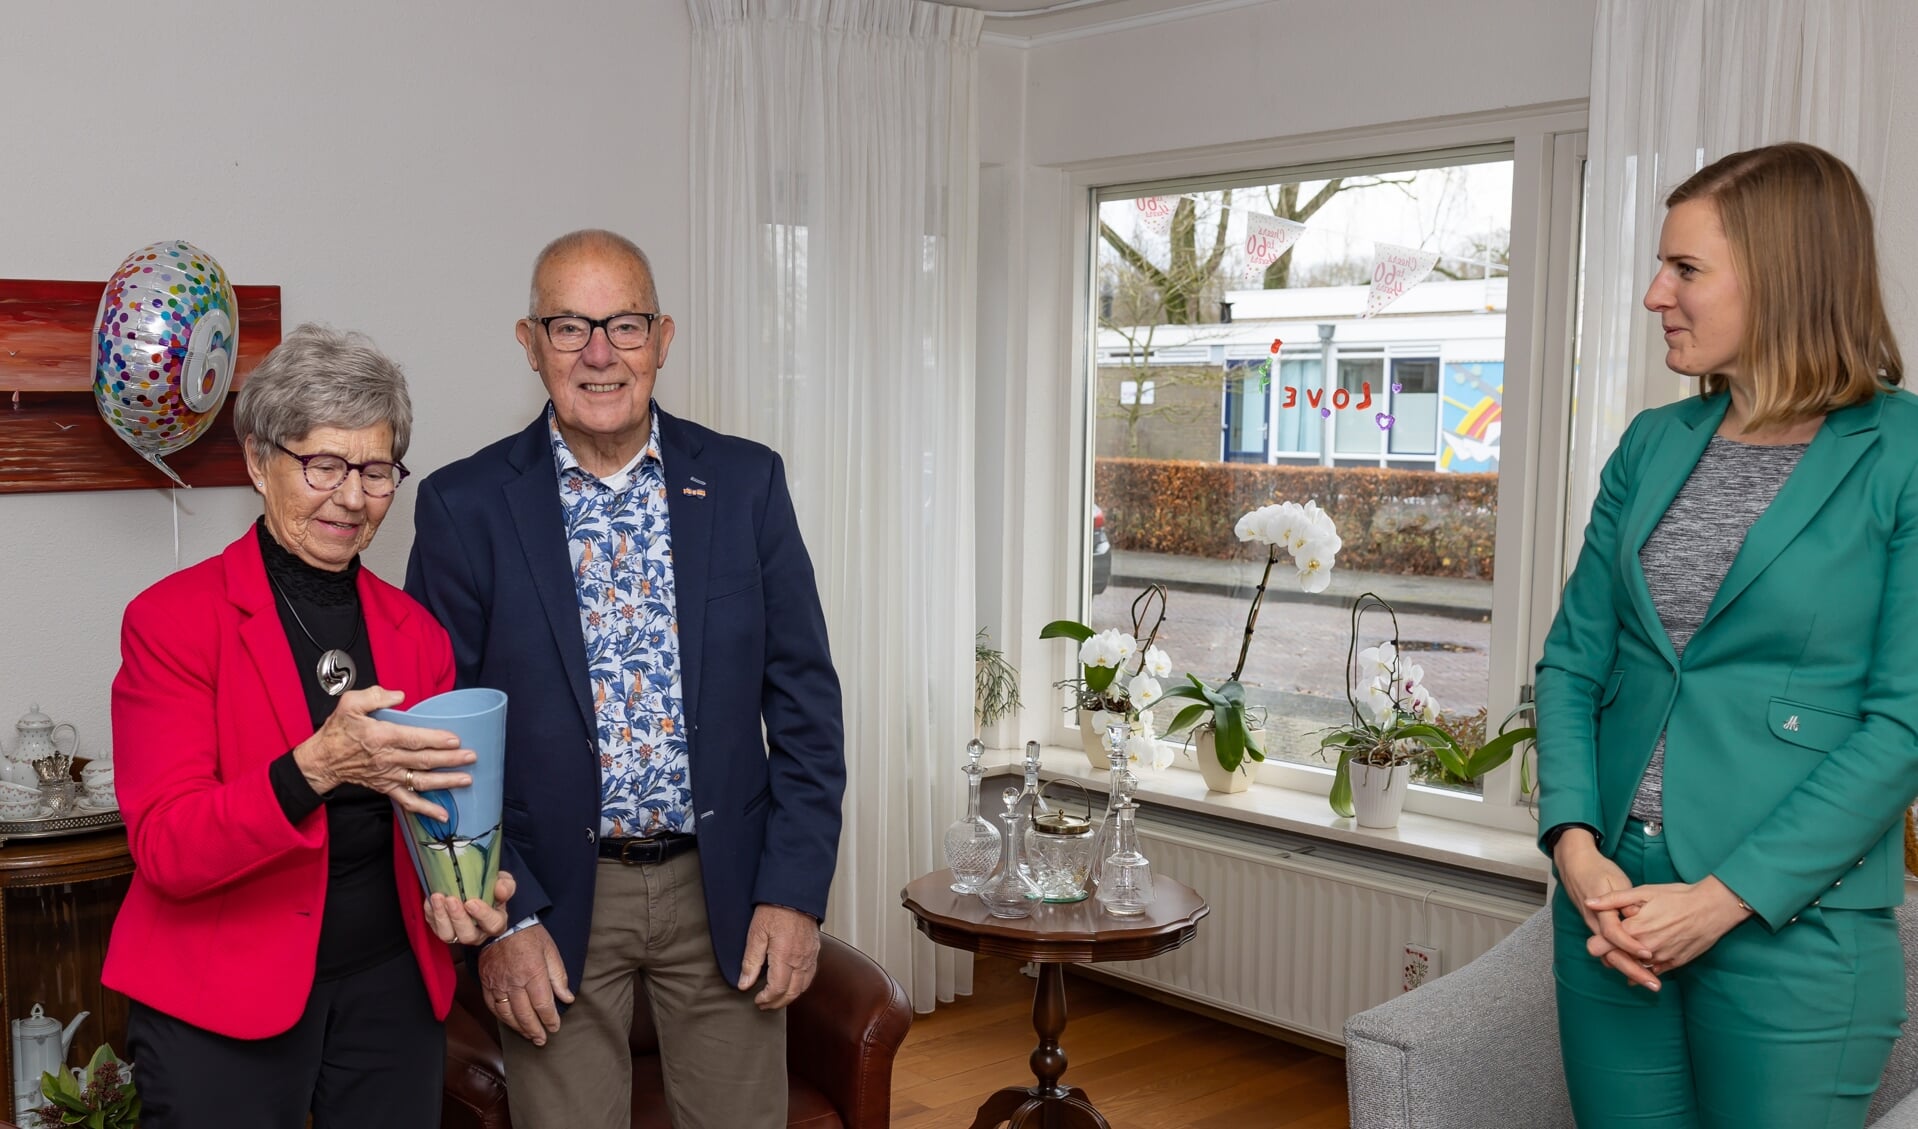 Het echtpaar Lubbinge was zestig jaar getrouwd en kreeg bezoek van wethouder Dorrit de Jong.